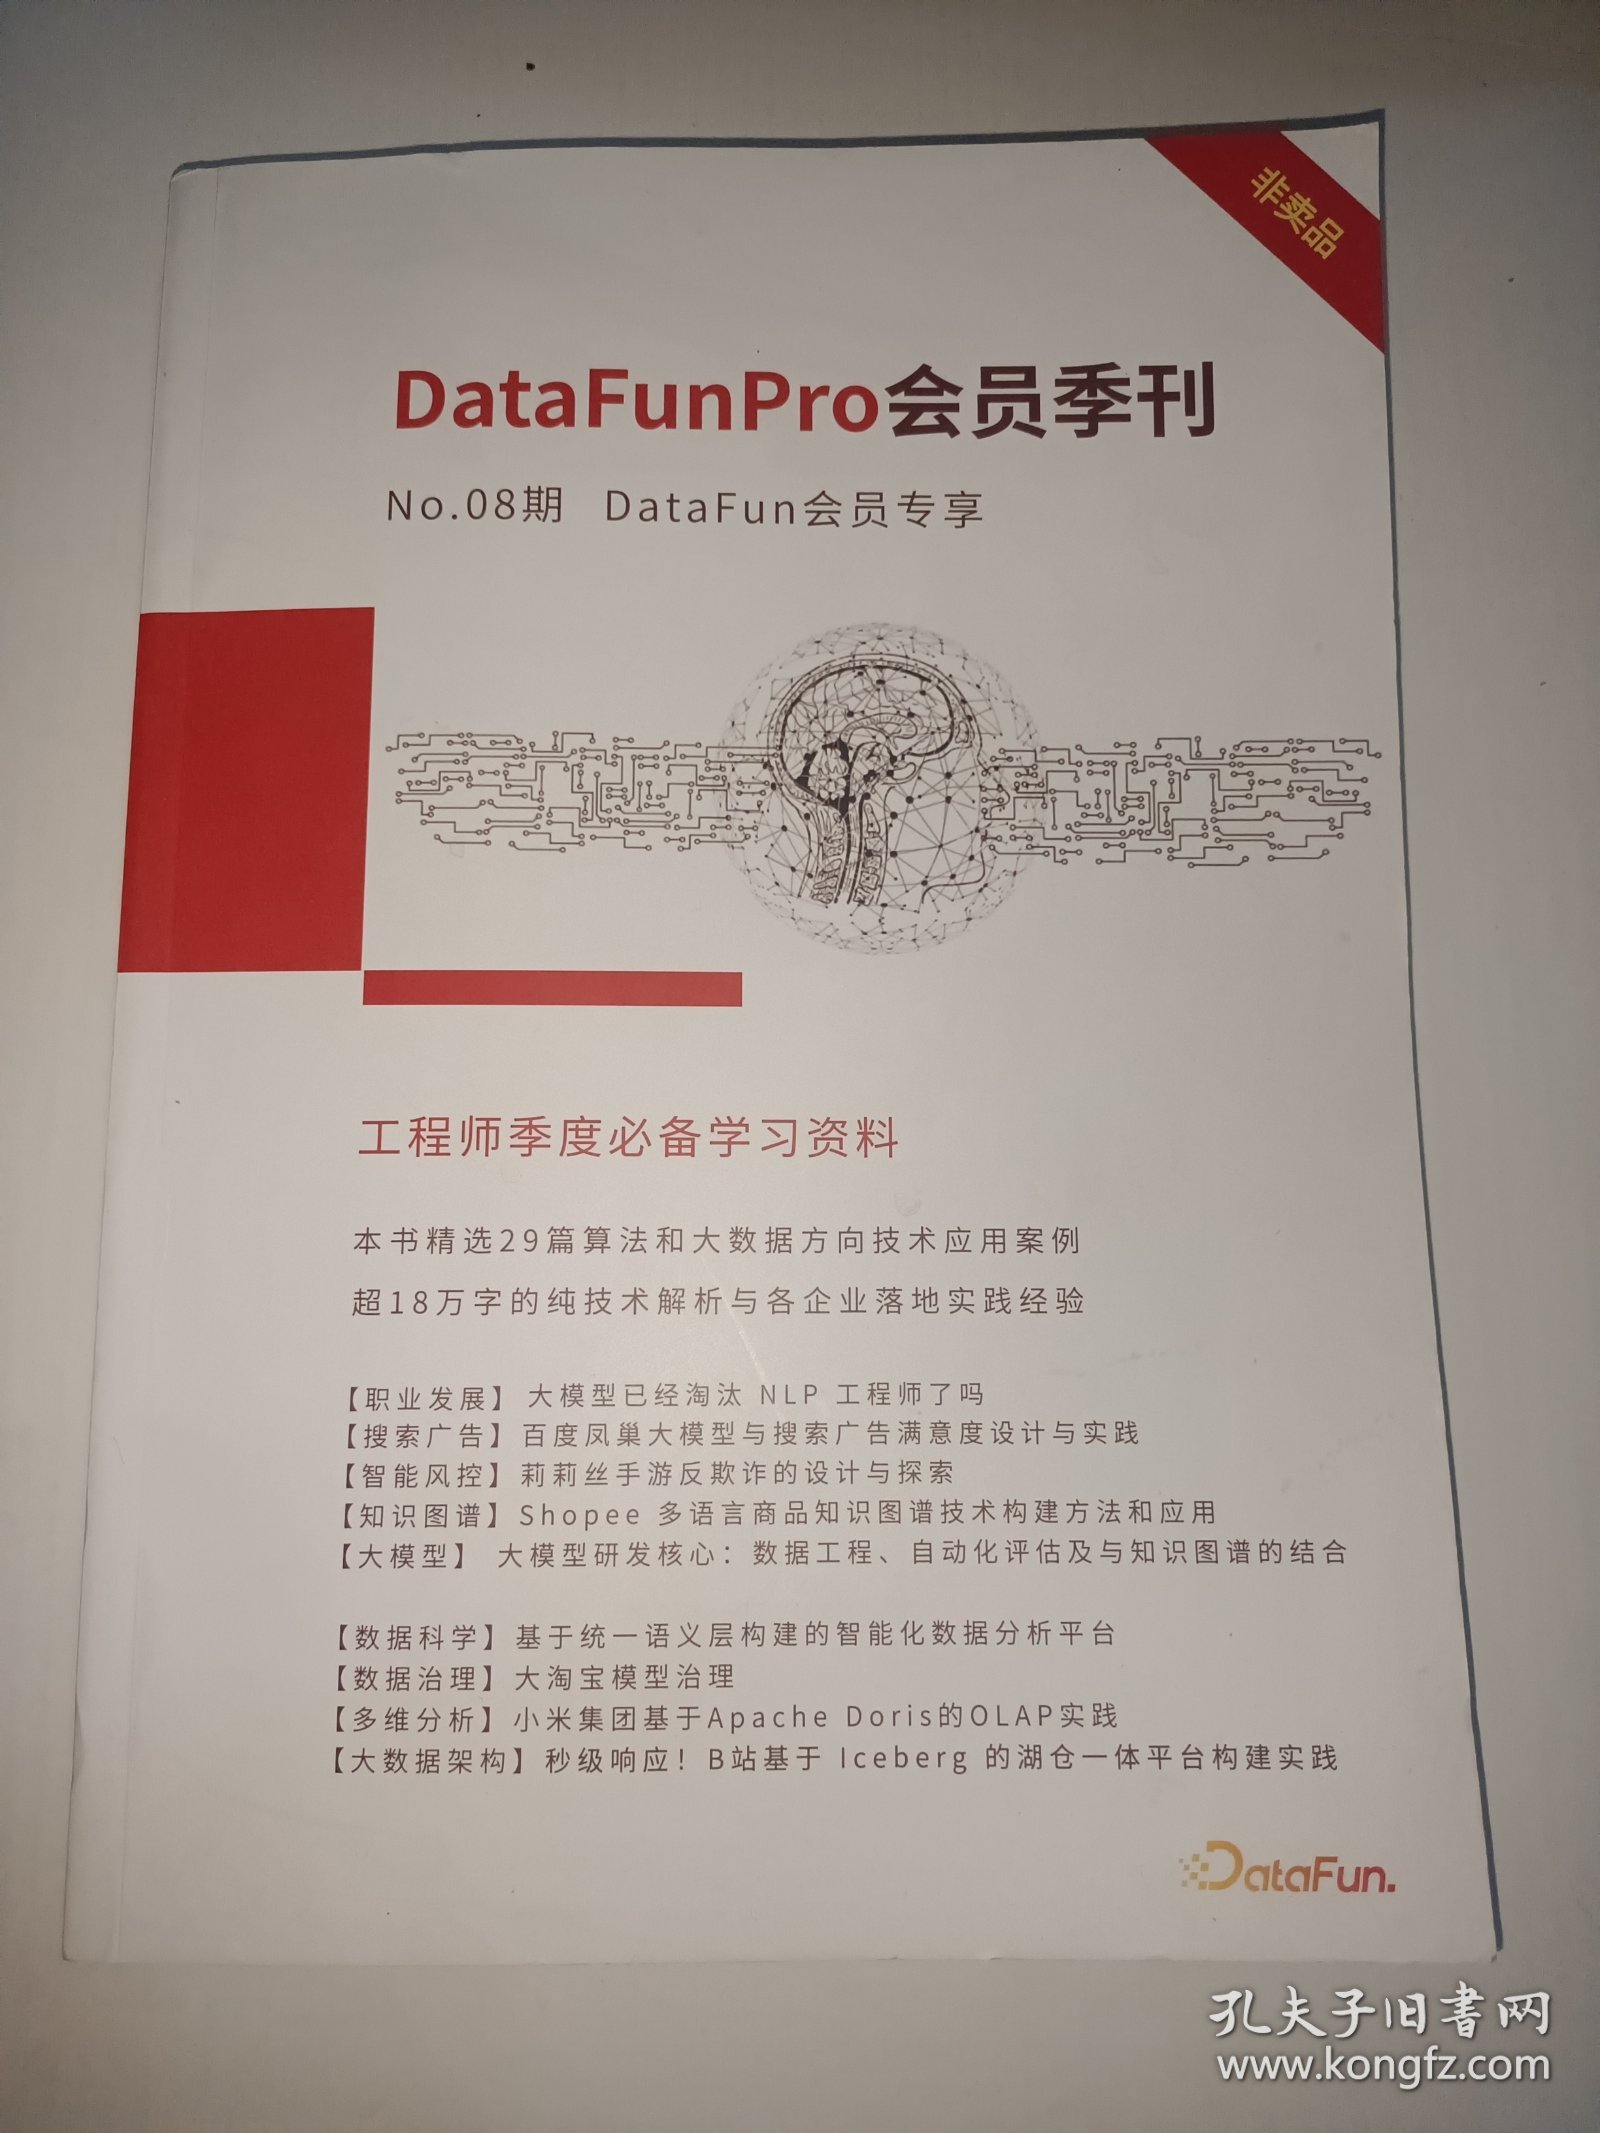 DataFunPro会员季刊 08期